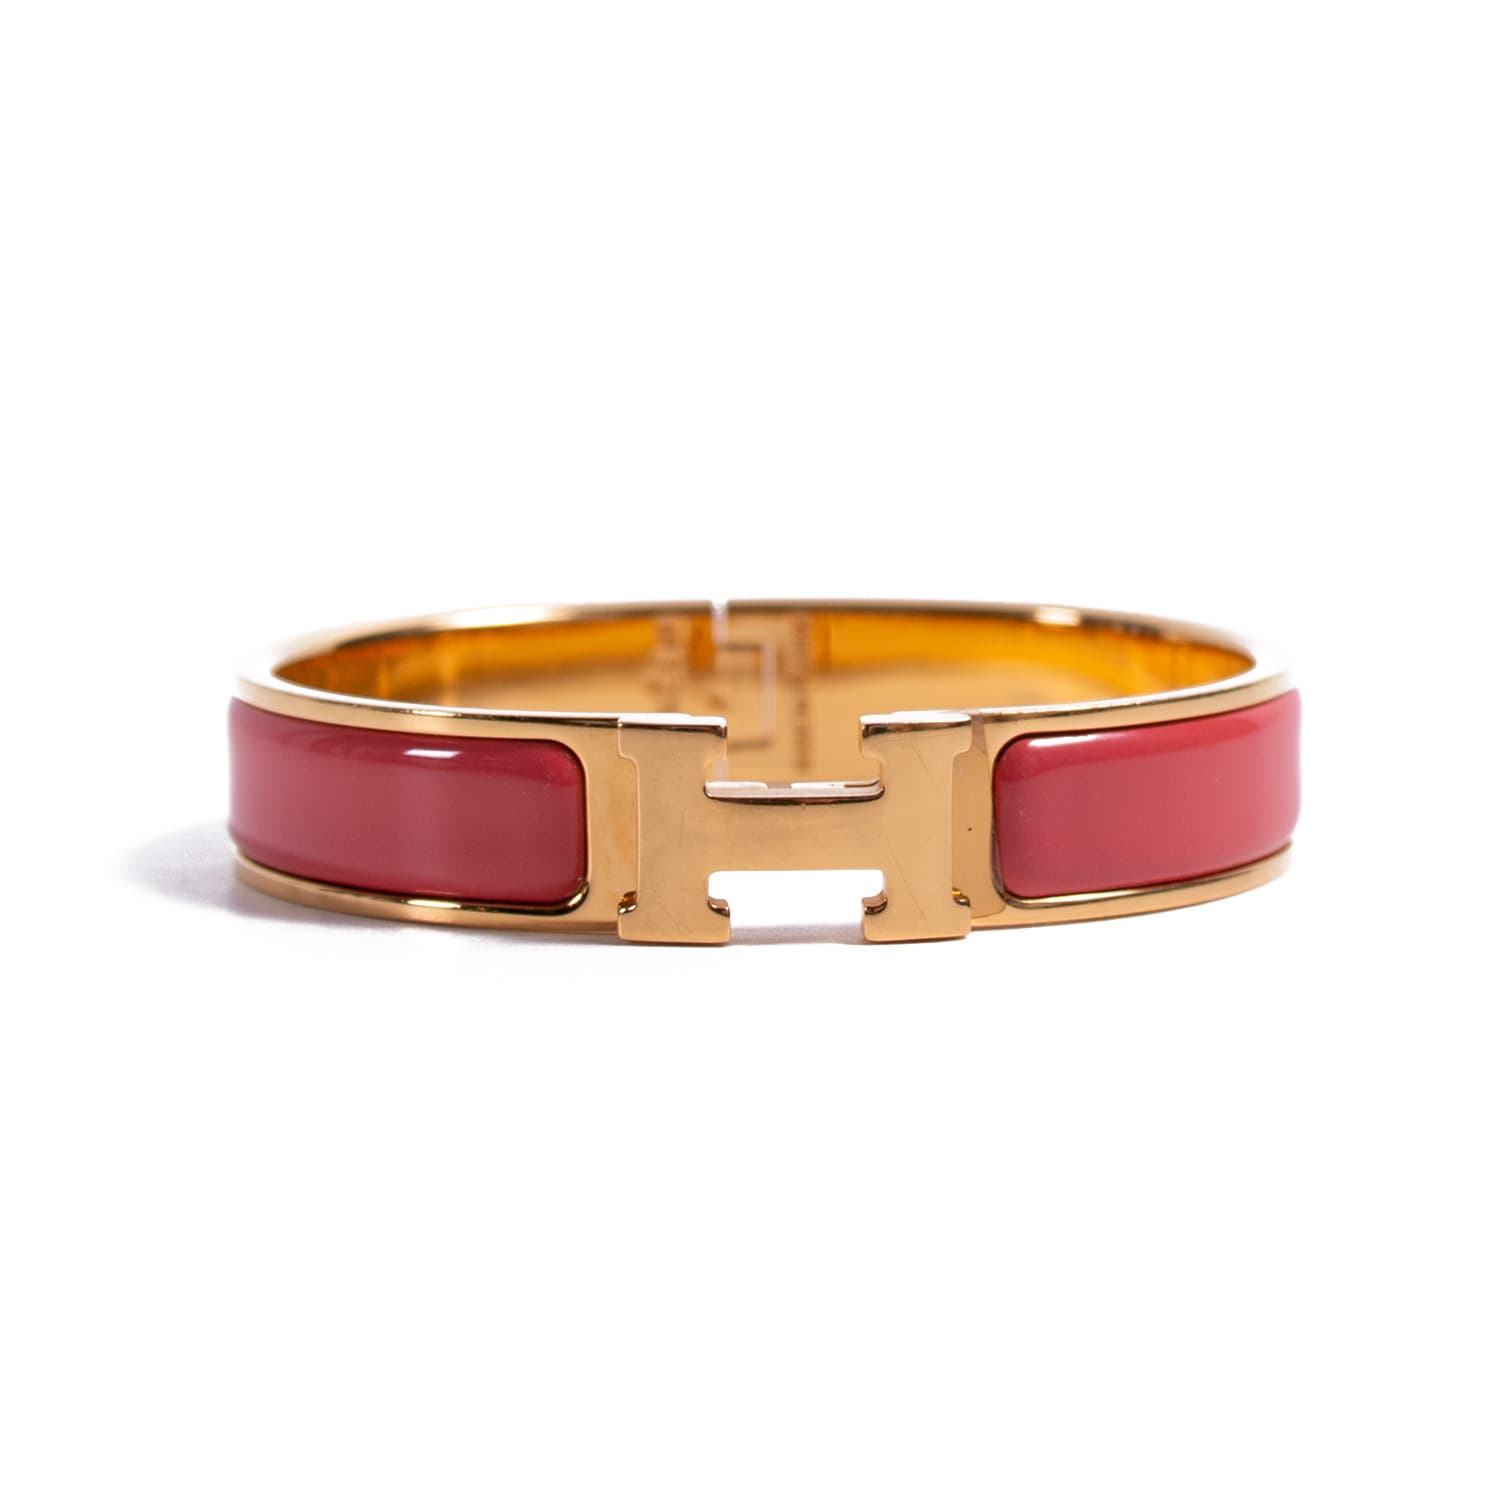 Shop authentic Hermès Narrow Clic H Bracelet at revogue for just USD 355.00